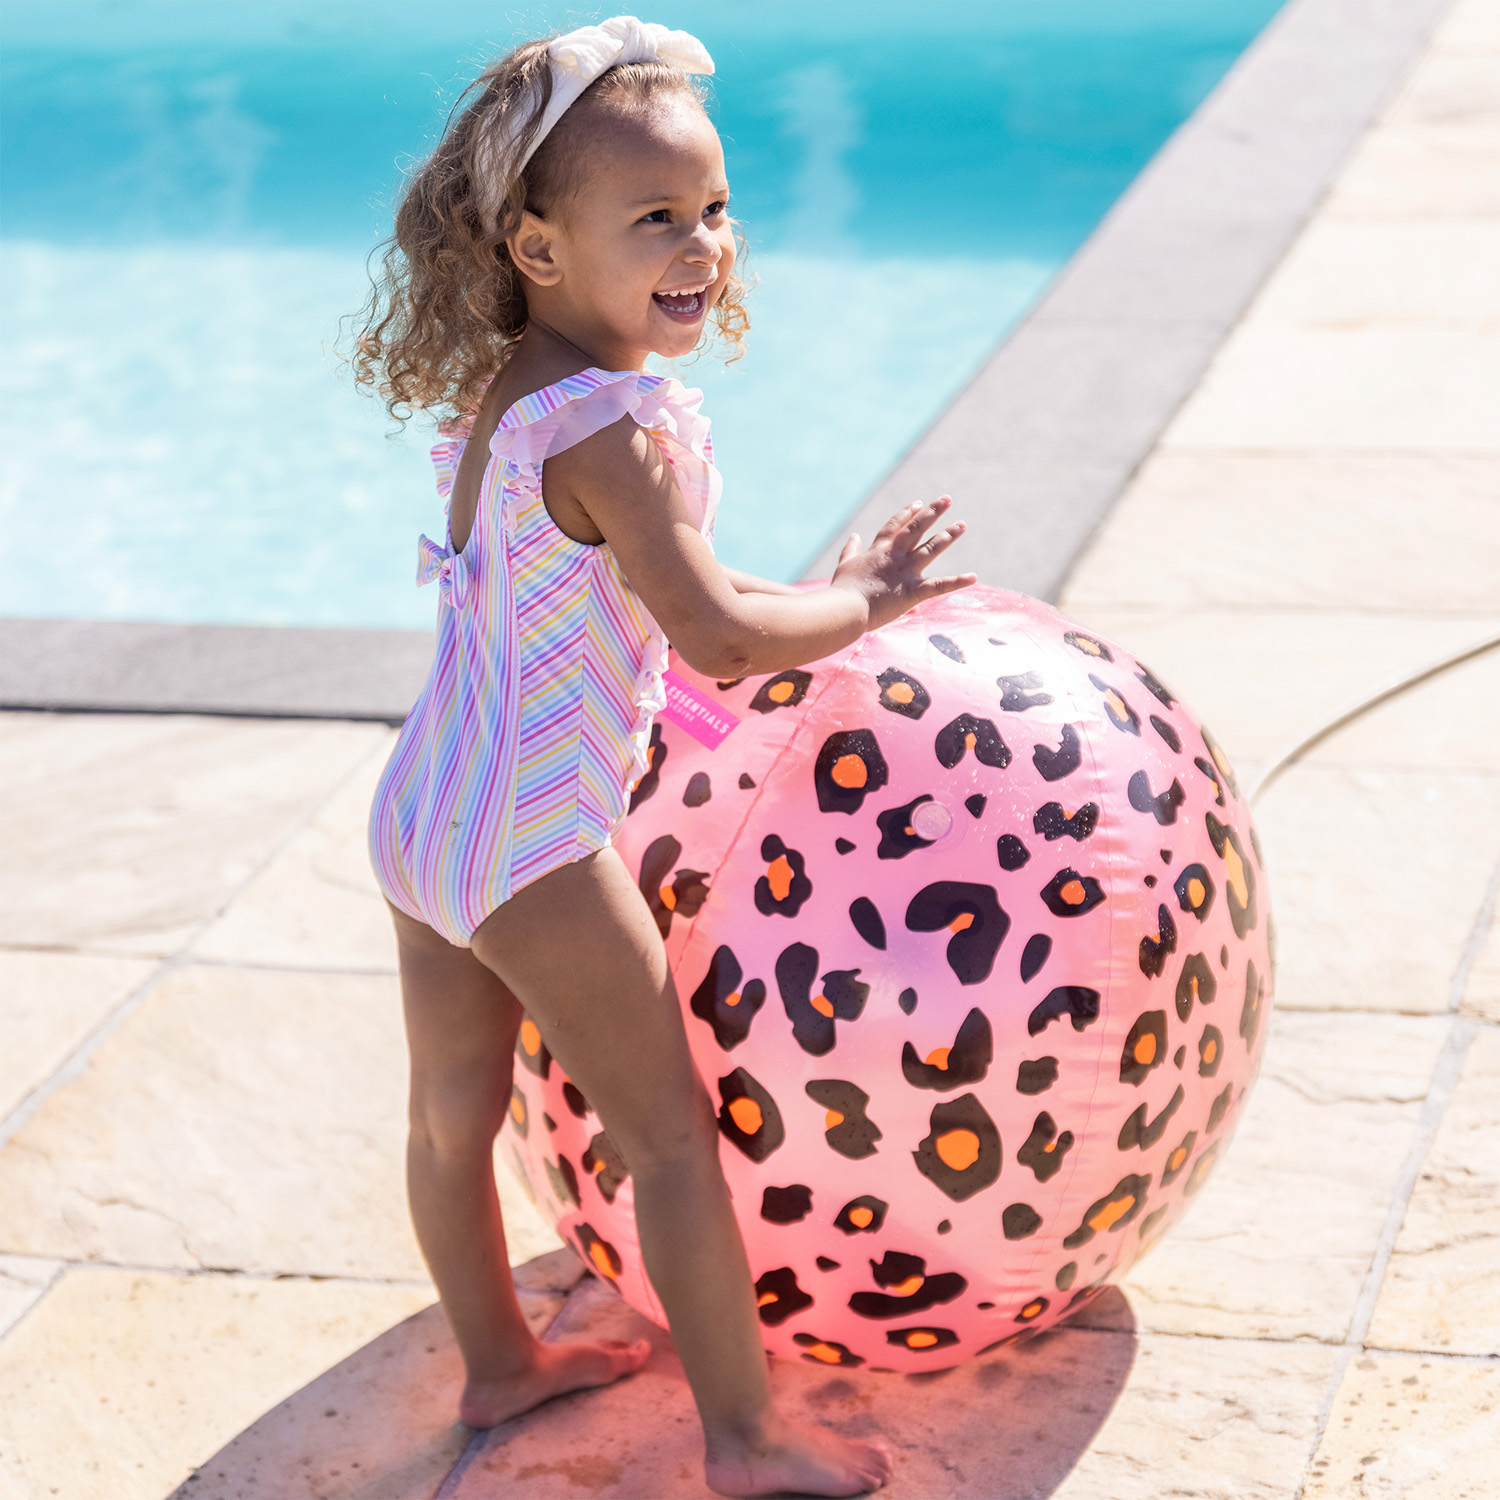 Swim Essentials | Wasserball mit Sprinkler Funktion 60cm | Rose Gold Leopard